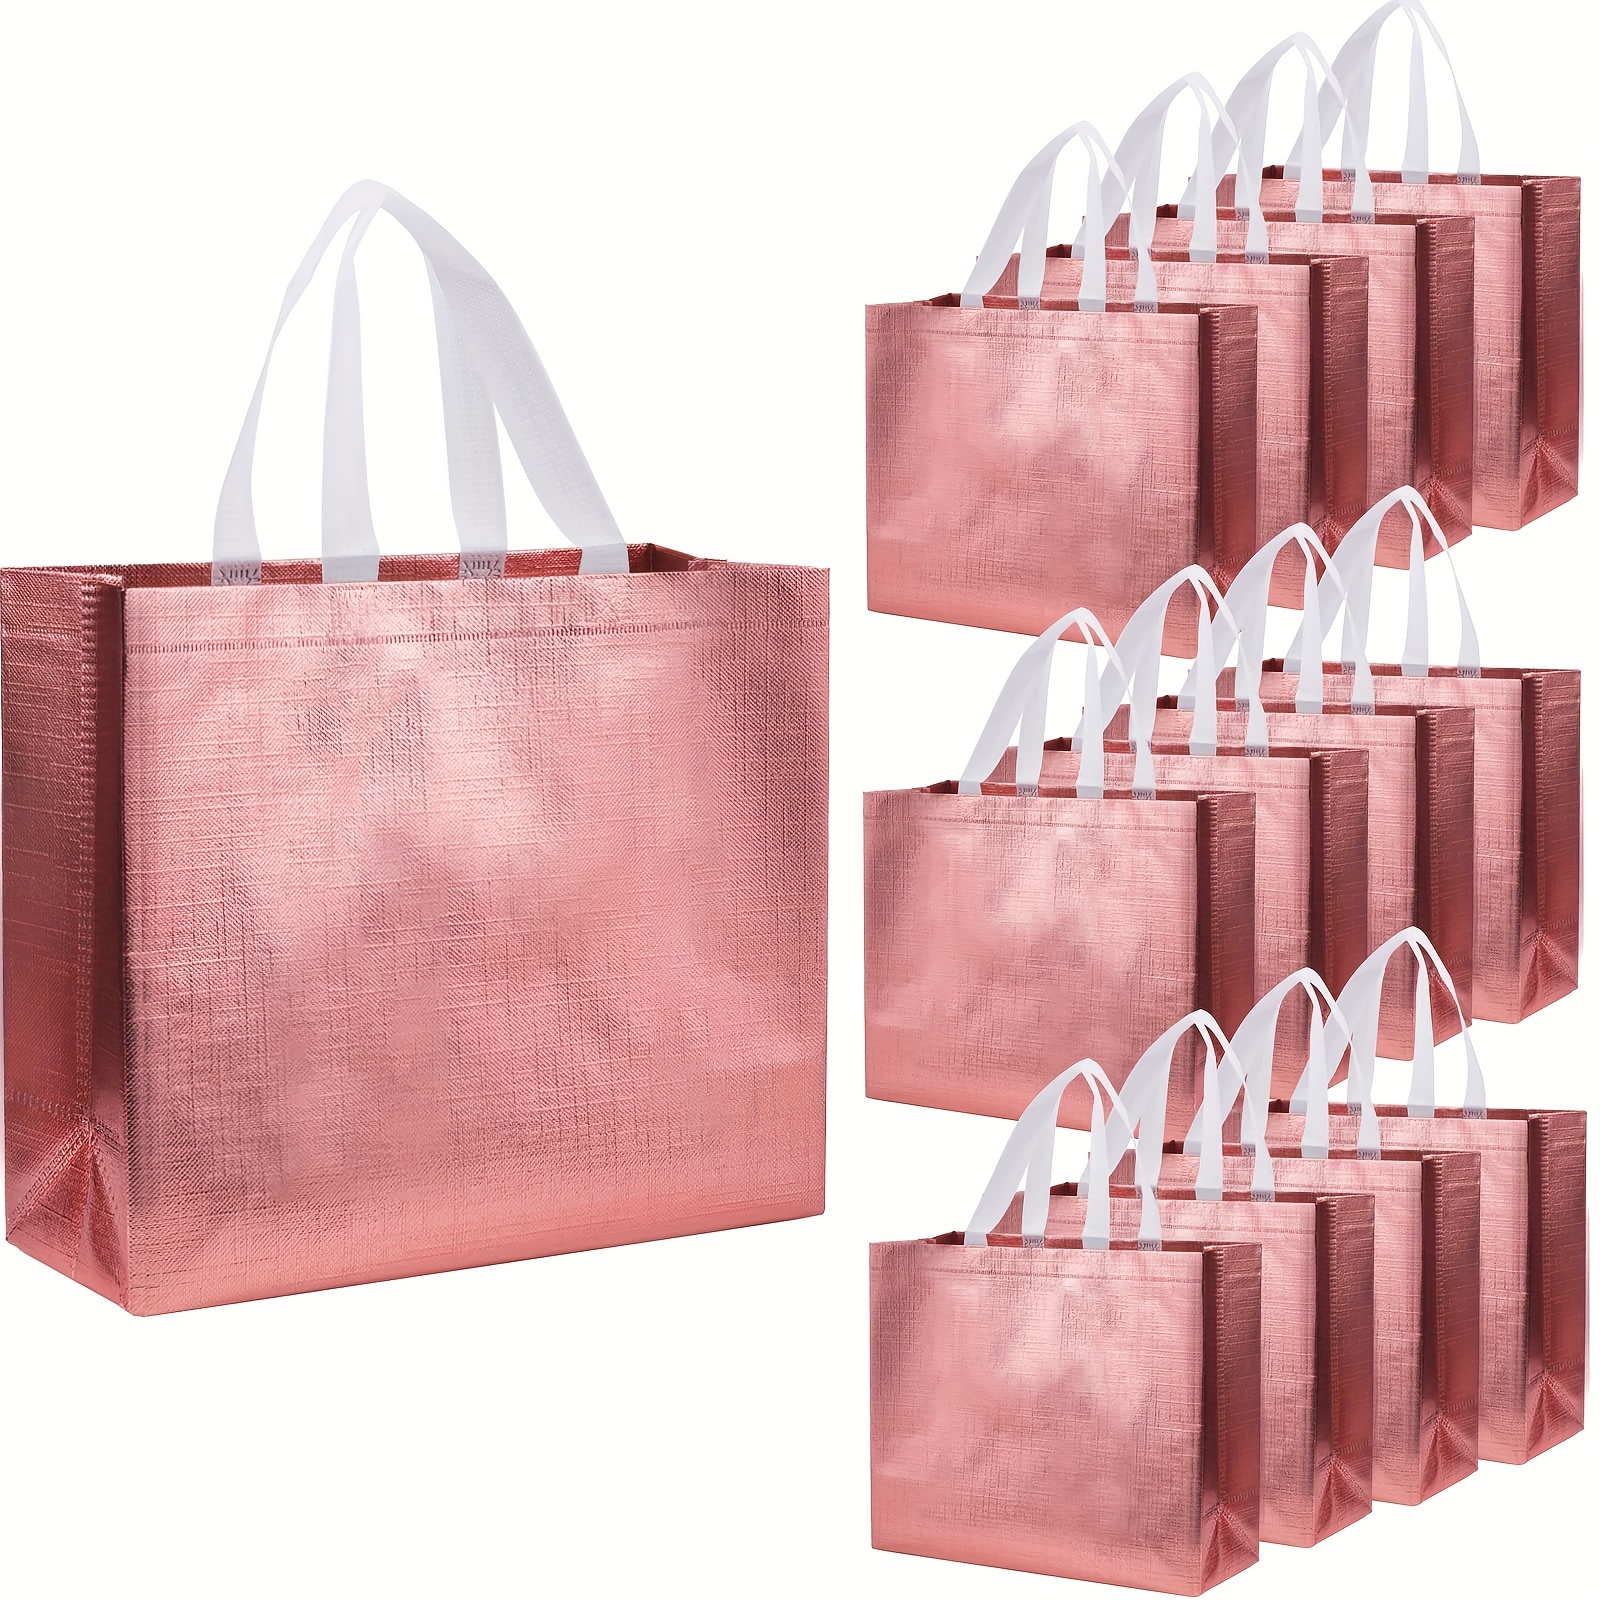 OccasionALL Bolsas de regalo pequeñas reutilizables de 8 x 4 x 10 pulgadas  con asas, bolsa de regalo de oro rosa para mujeres, día de la madre, novia